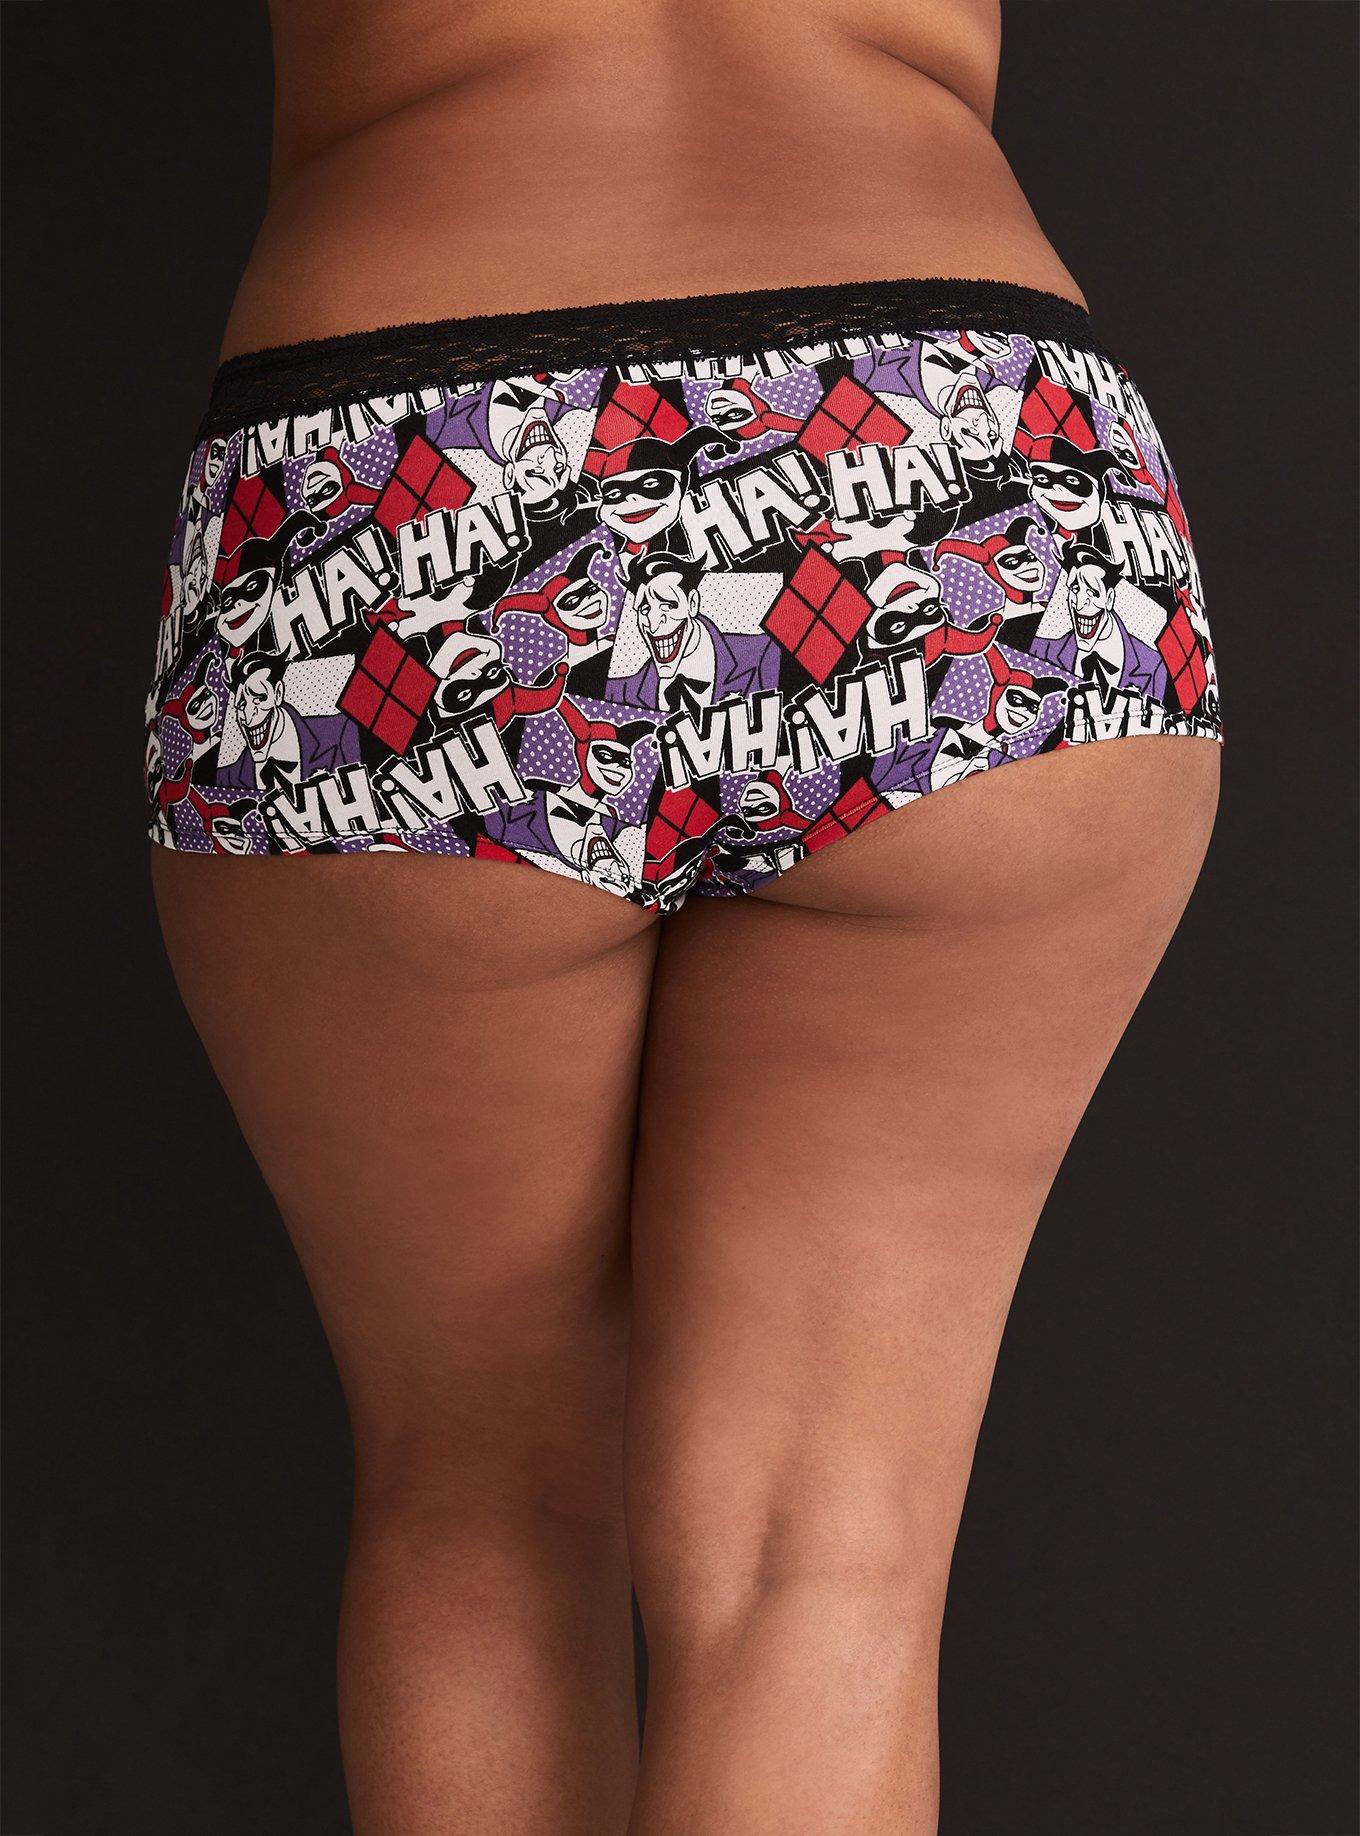 Harley Quinn Print Lacey Women's Underwear Panties Red